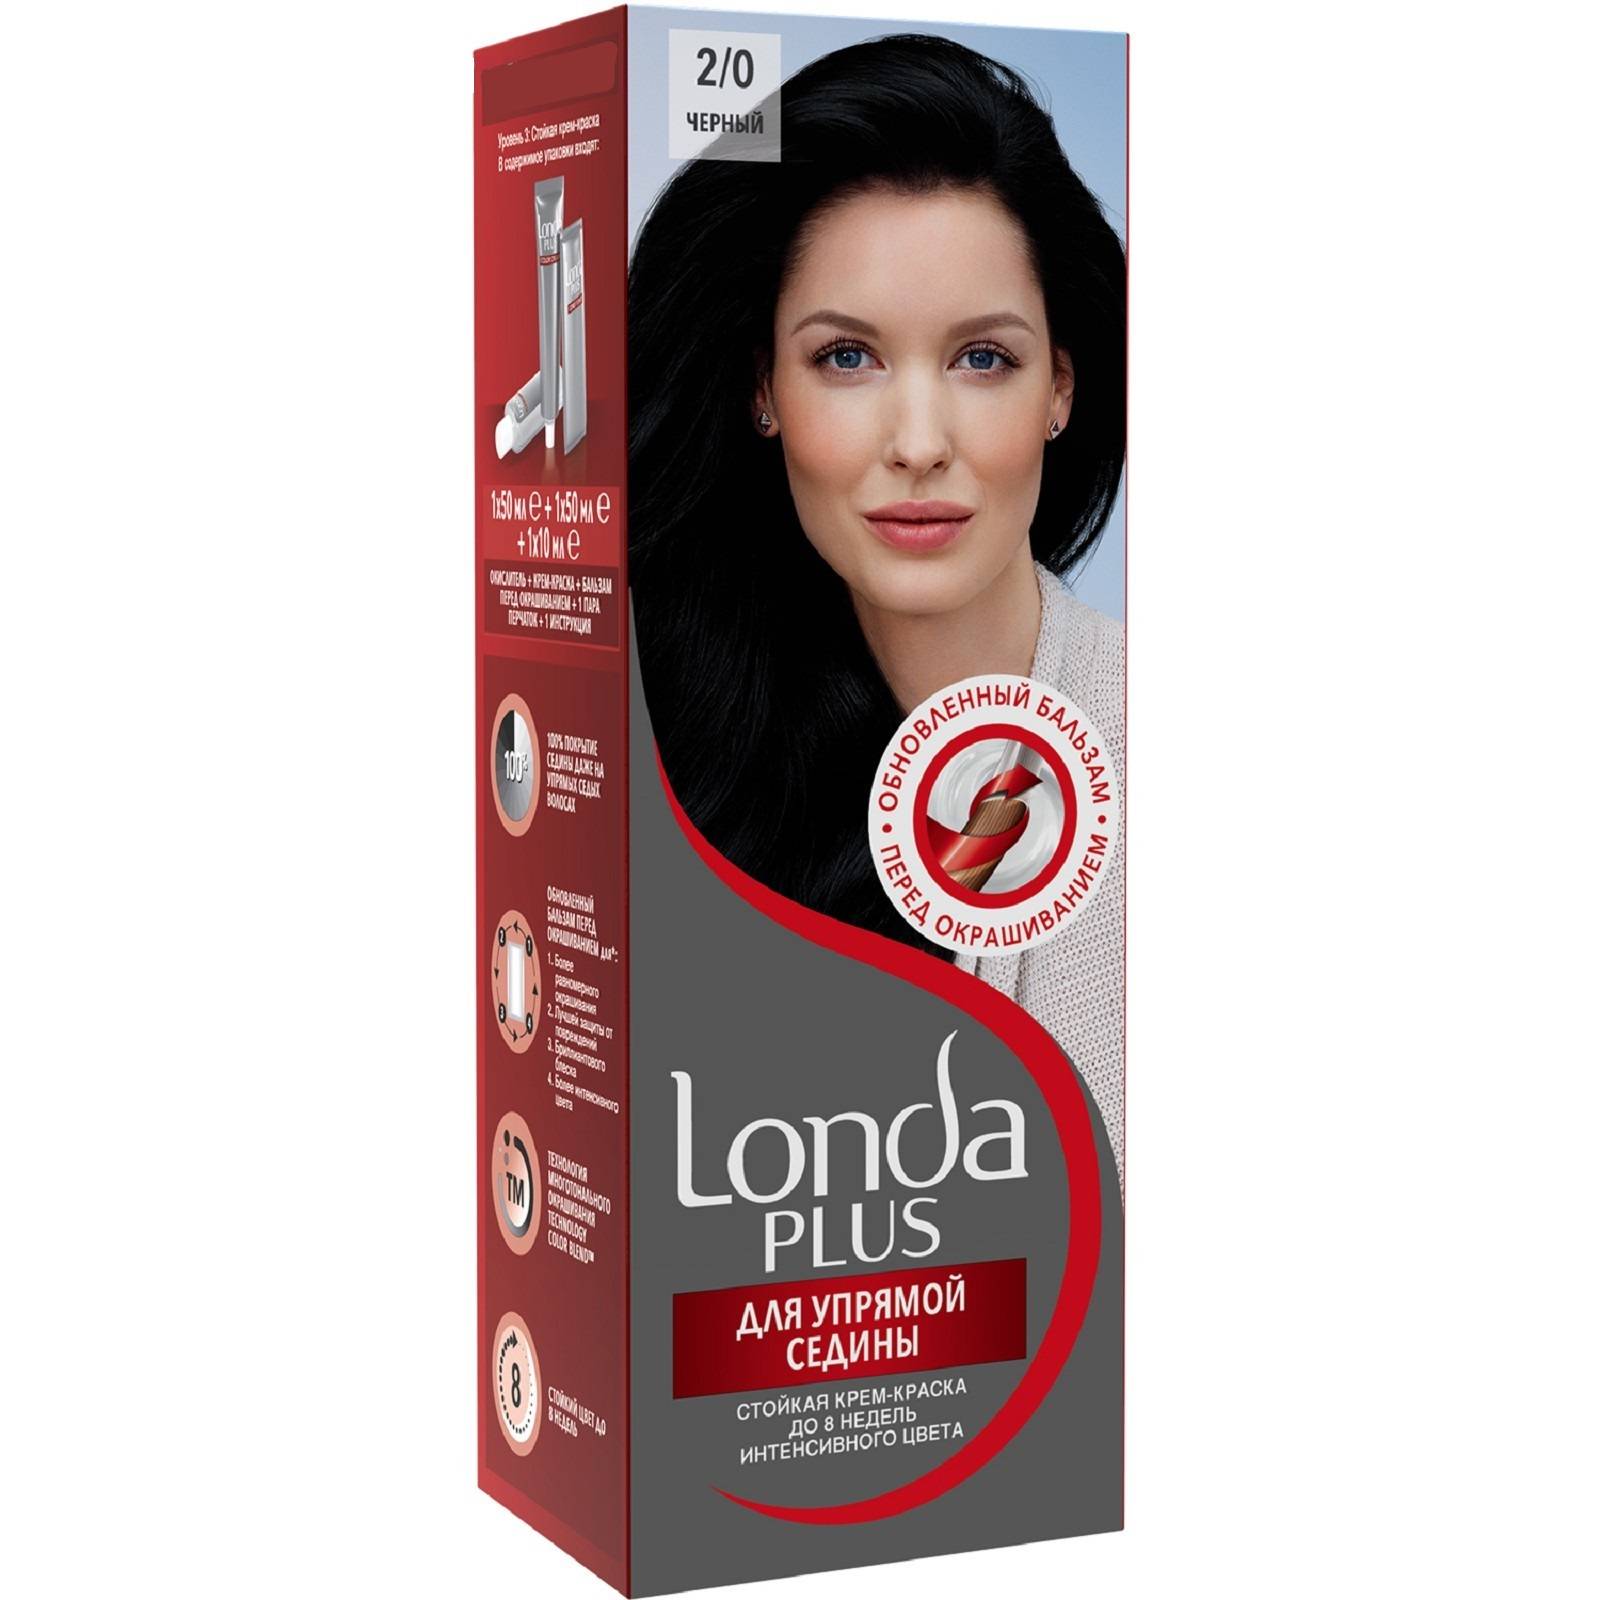 Купить краску от седины. Londa Plus крем-краска 2/0 черный. Лонда стойкая крем-краска для волос 2/0 черный. Палитра Londa чёрные краски. Londa Plus краска д/сед 2/0 черный.